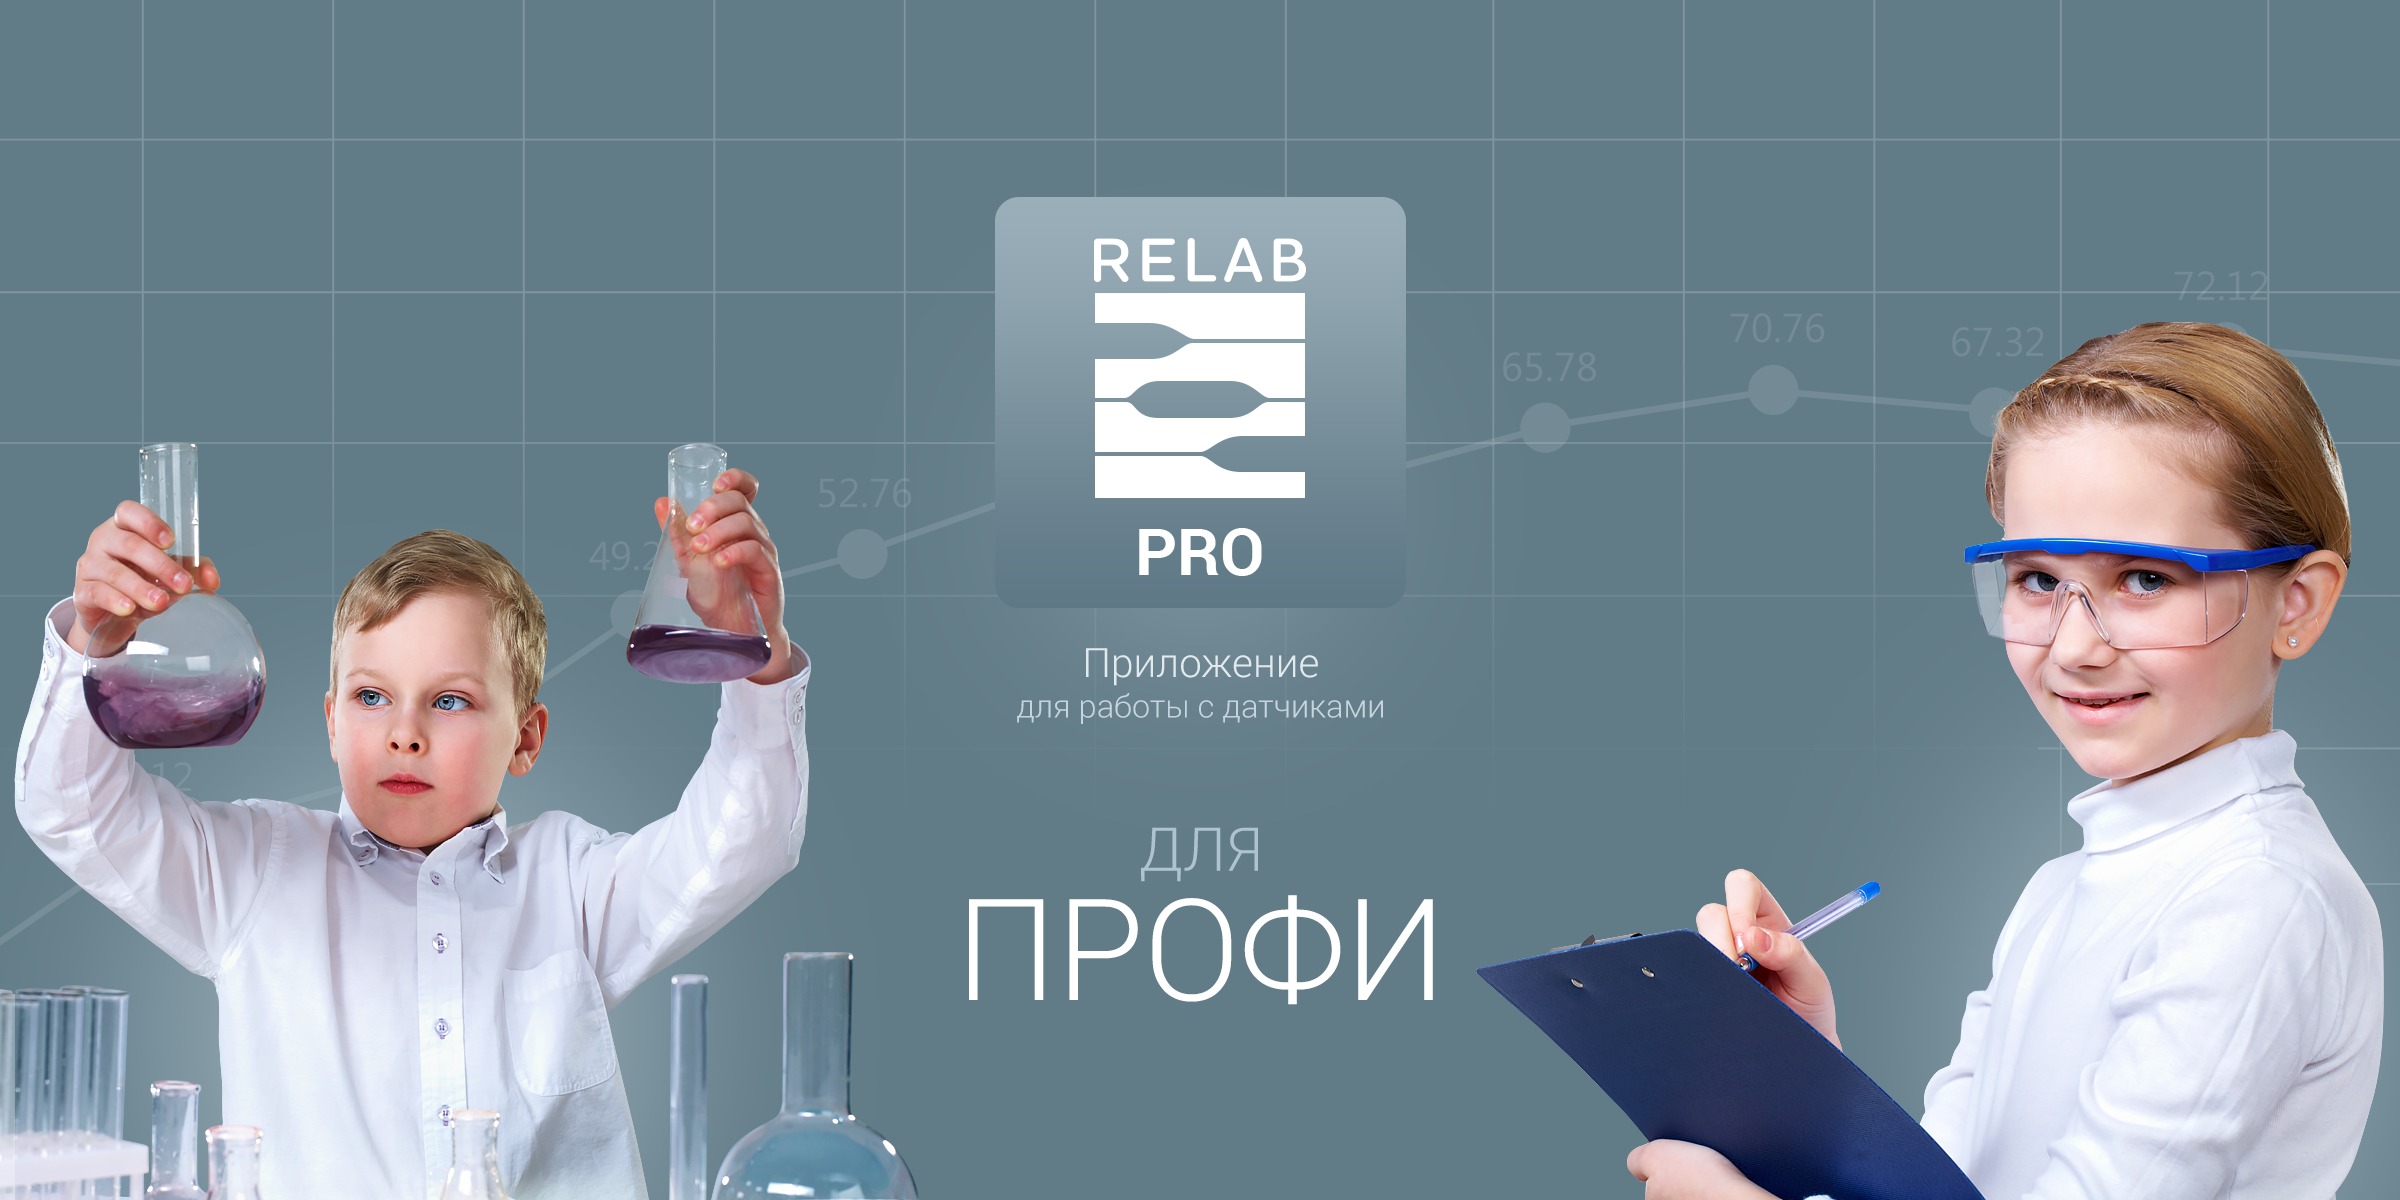 Microsoft: Российская компания ООО «Релаб» вошла в 11 мировых брендов.